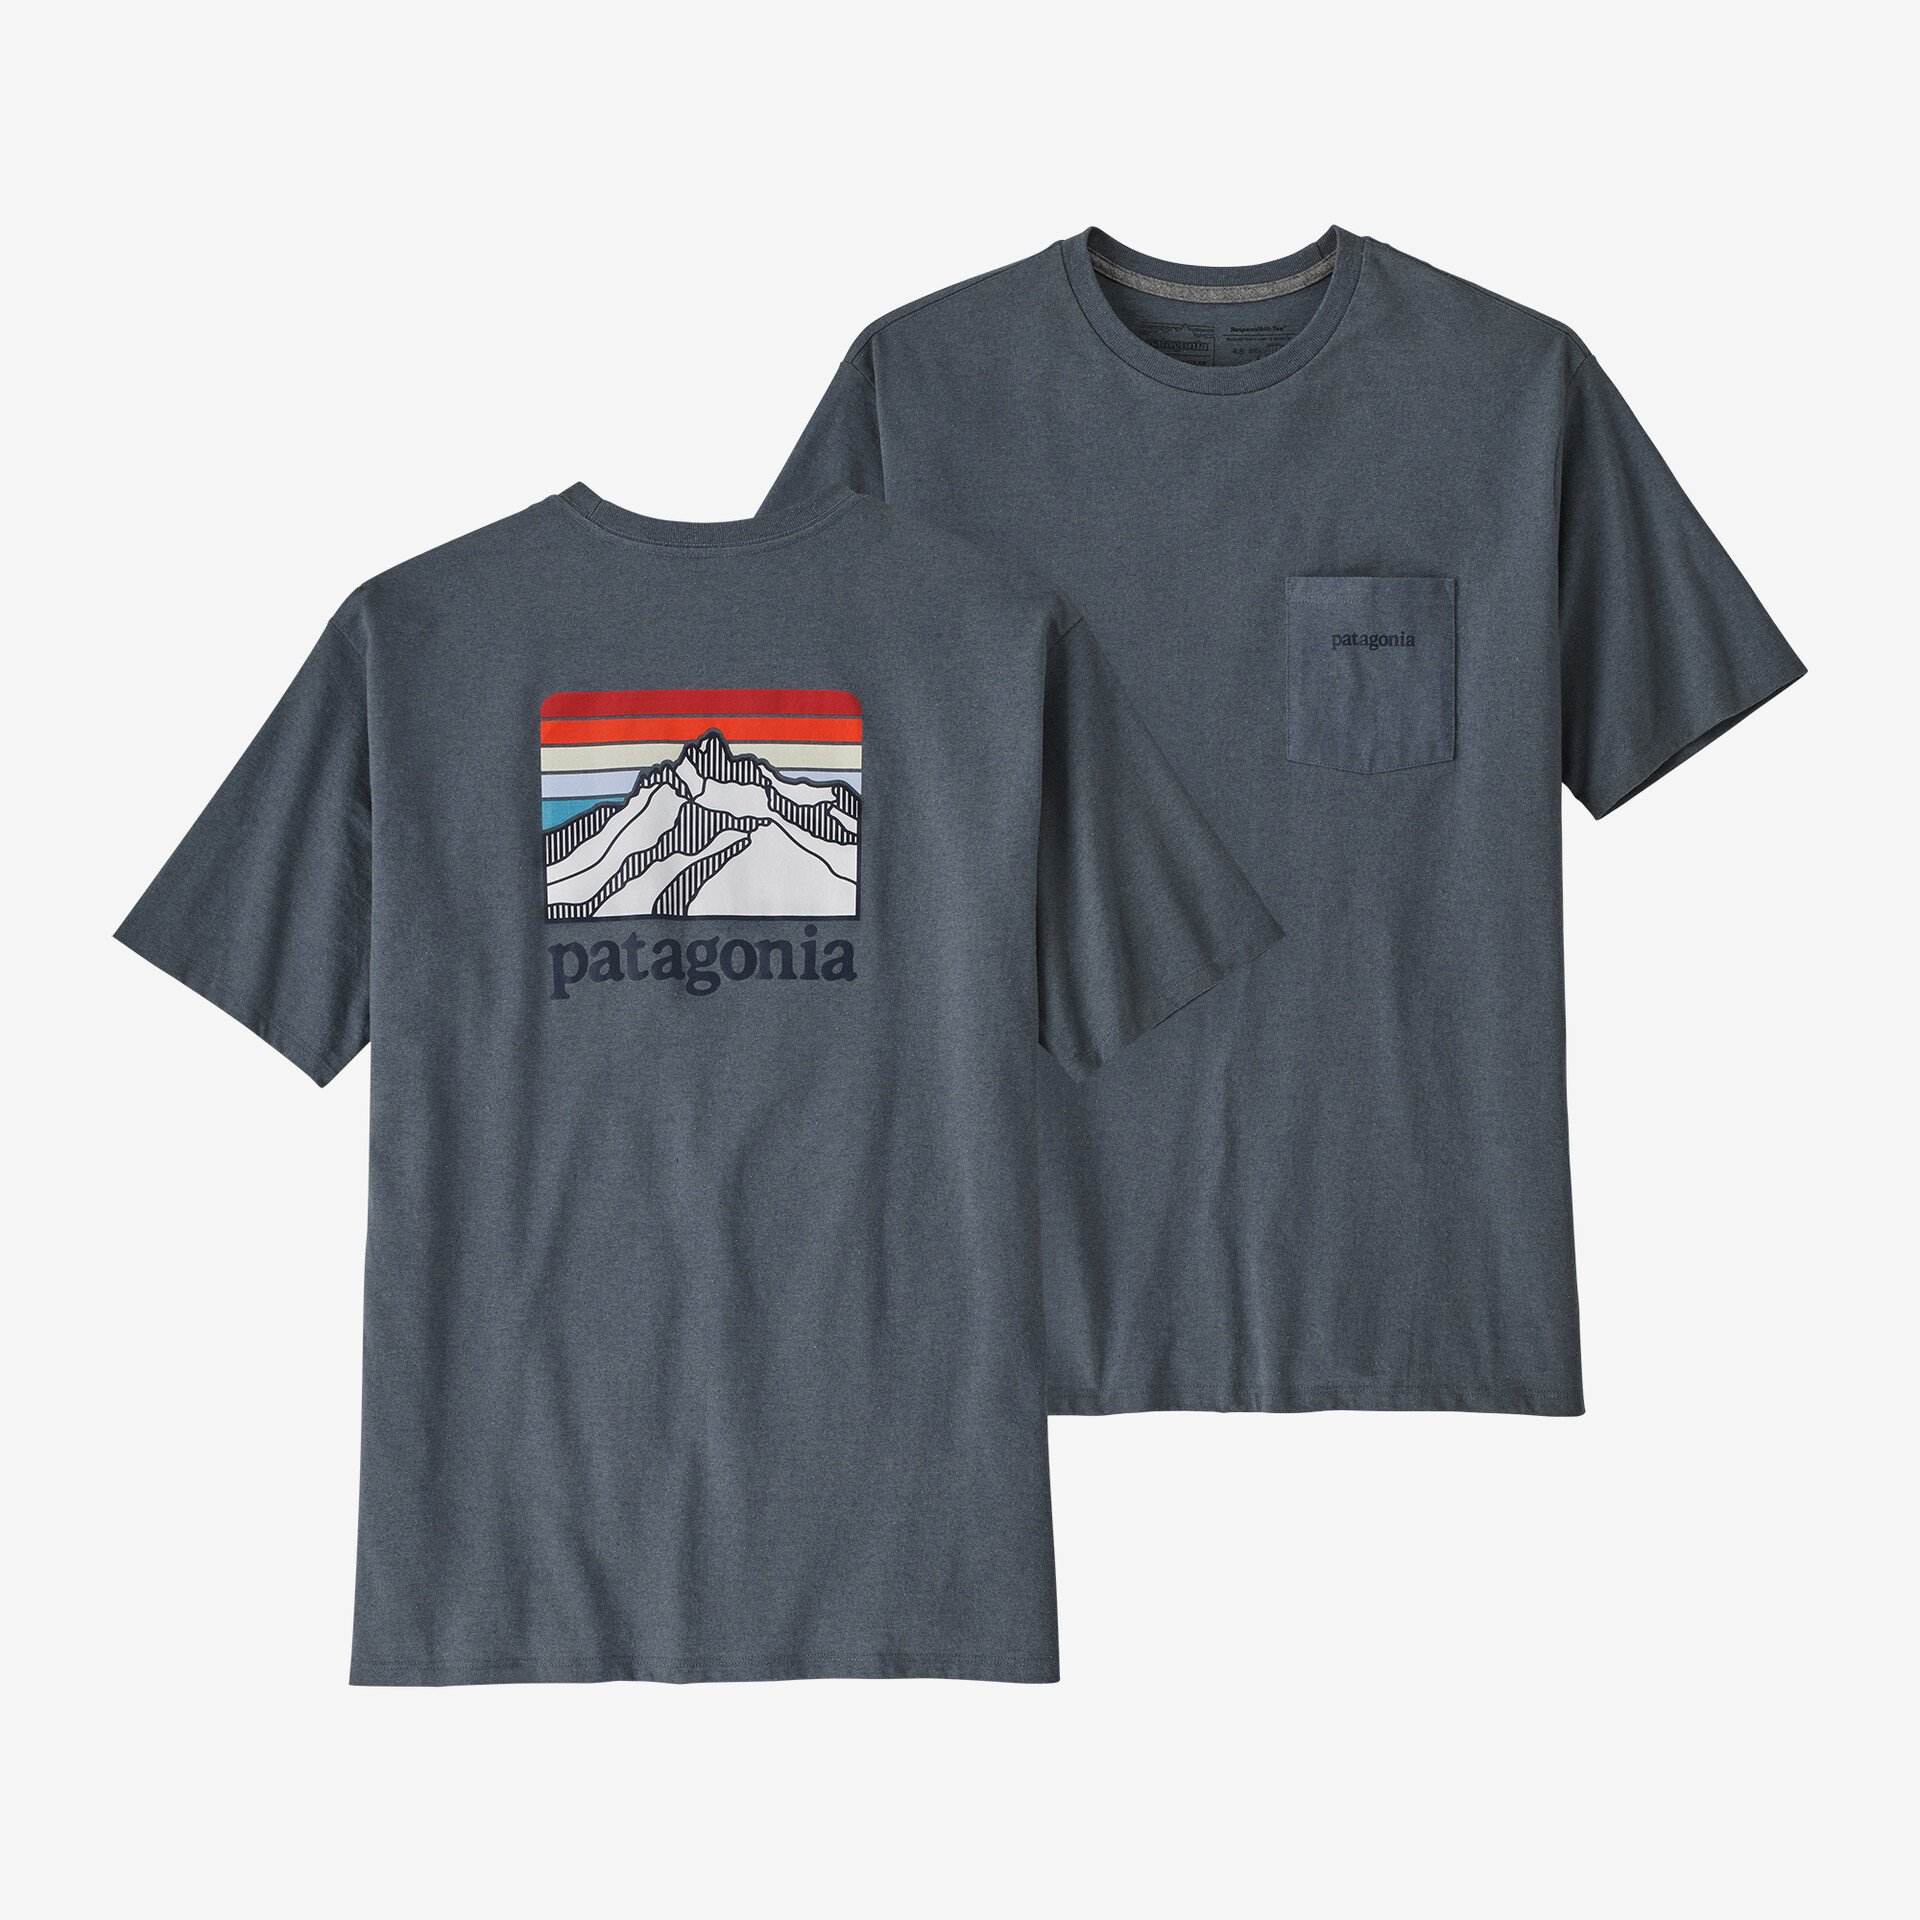 цена Мужская ответственная футболка с логотипом и карманом Patagonia, серый